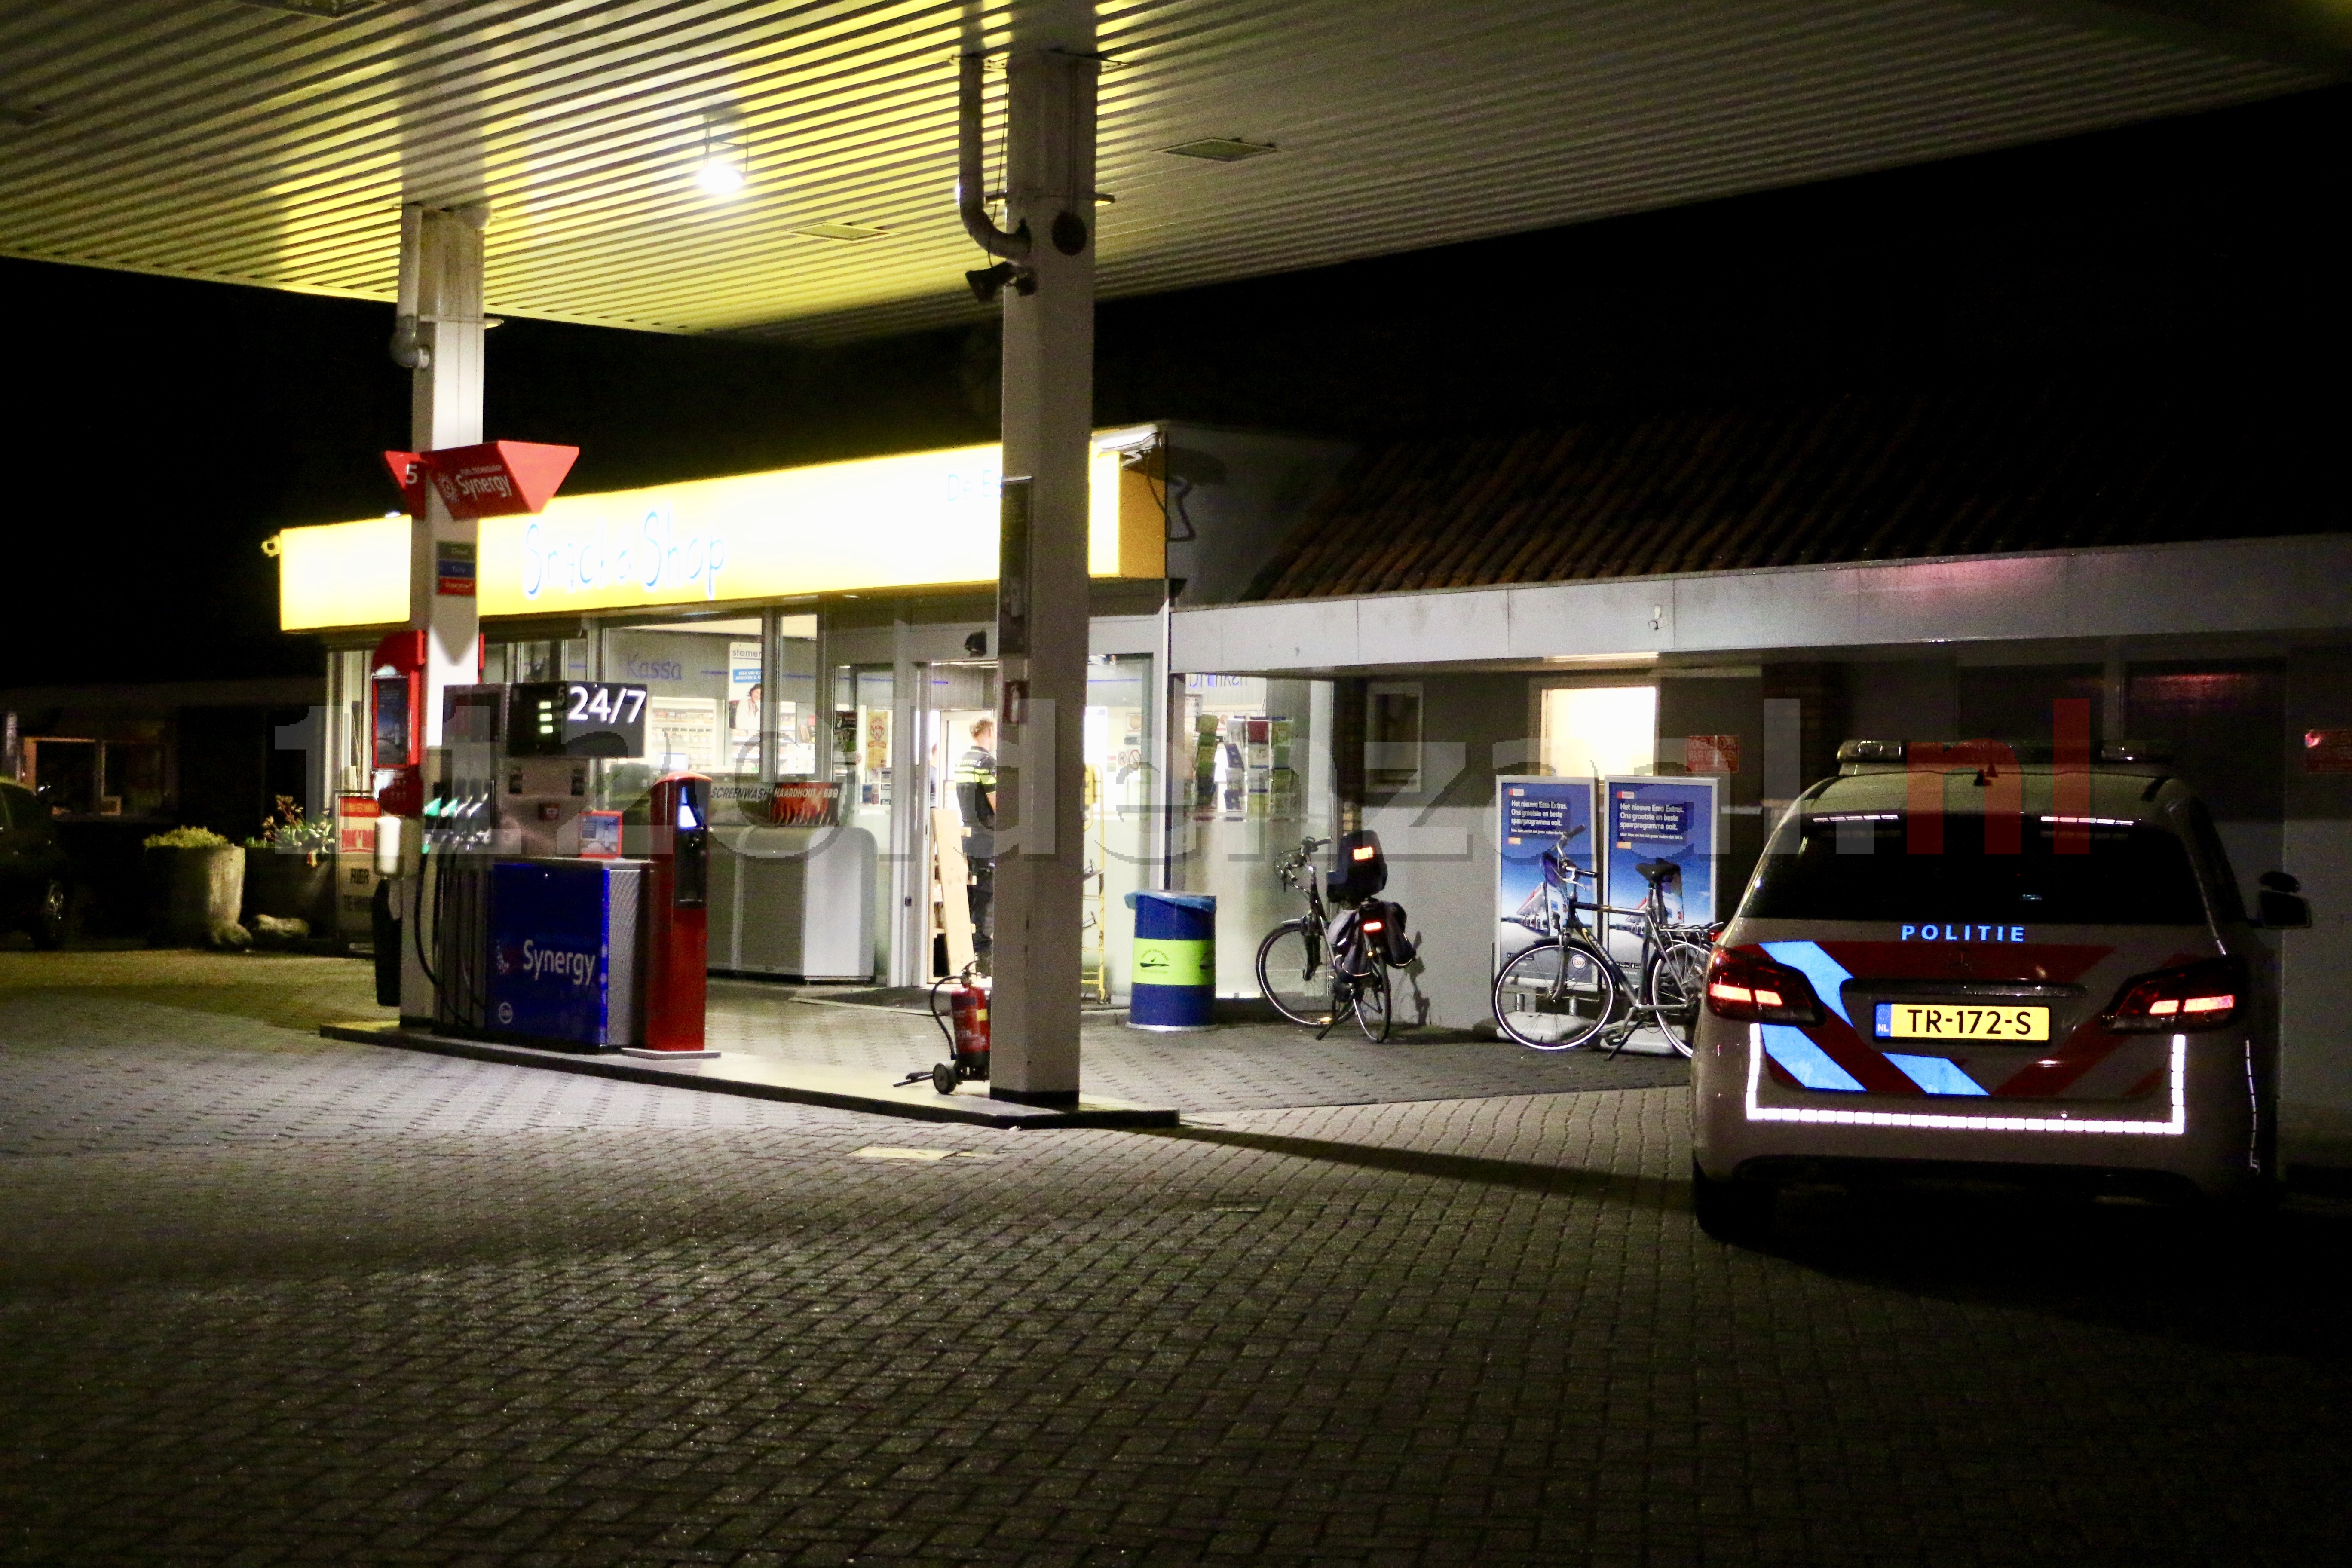 UPDATE: Overvaller vertrek zonder buit; politie zoekt getuigen van poging overval tankstation Oldenzaal